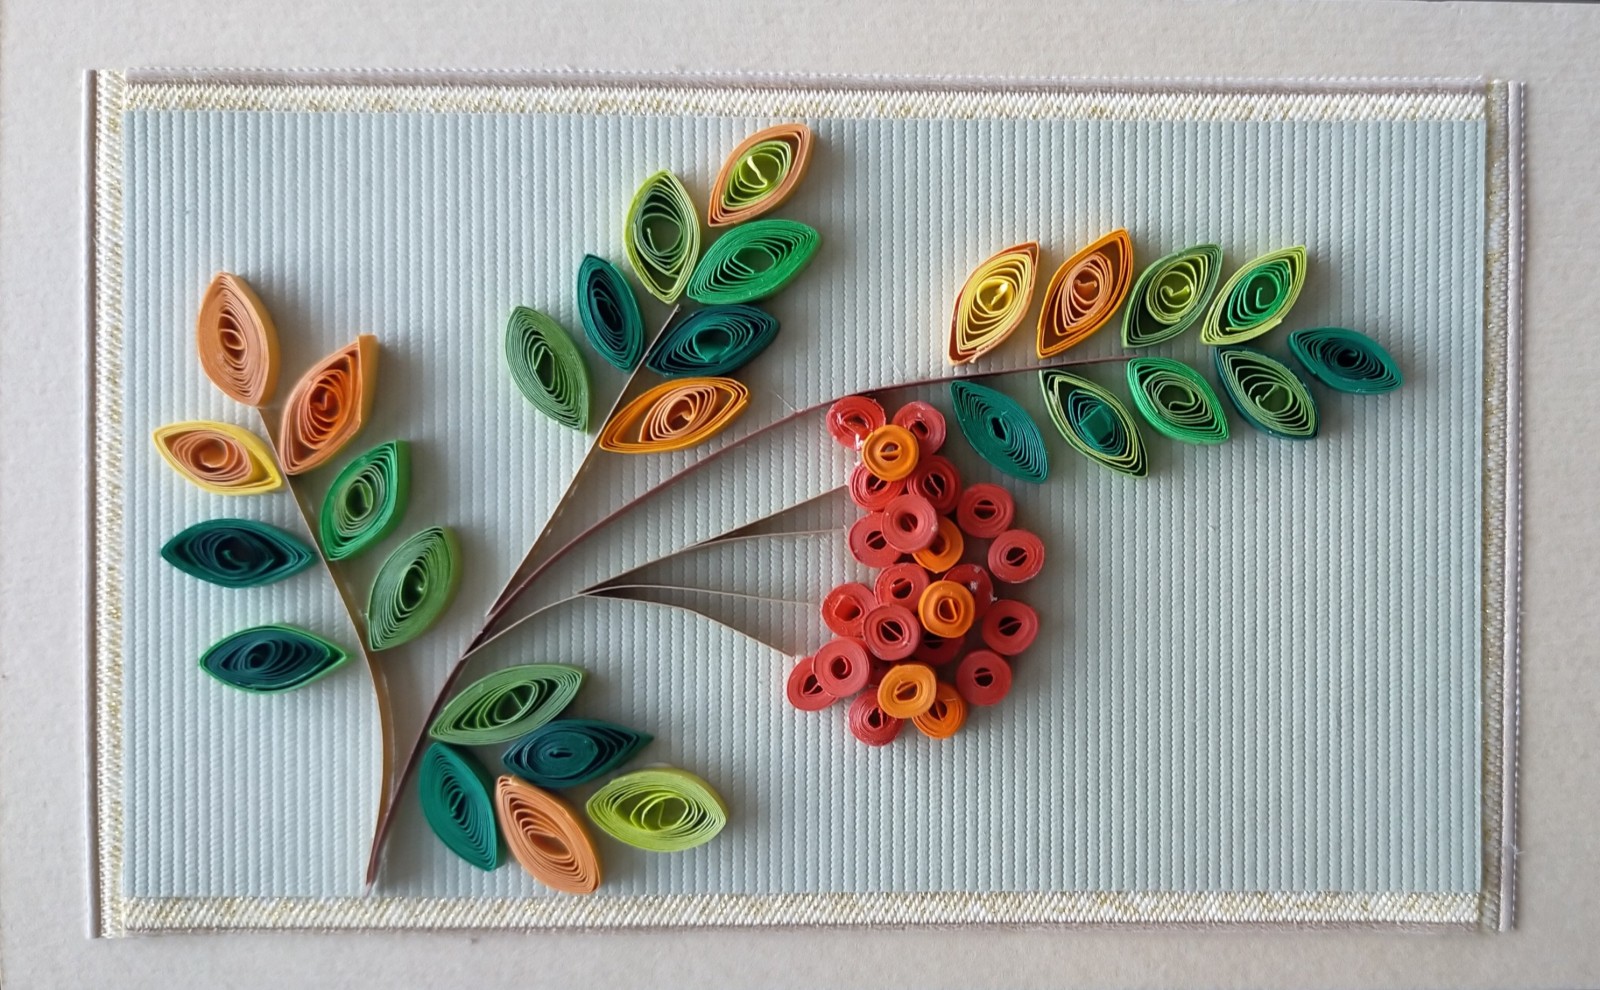 Мастер класс в технике петельчатого квиллинга на расческе что это такое каппы листья цветы картины поделки для начинающих